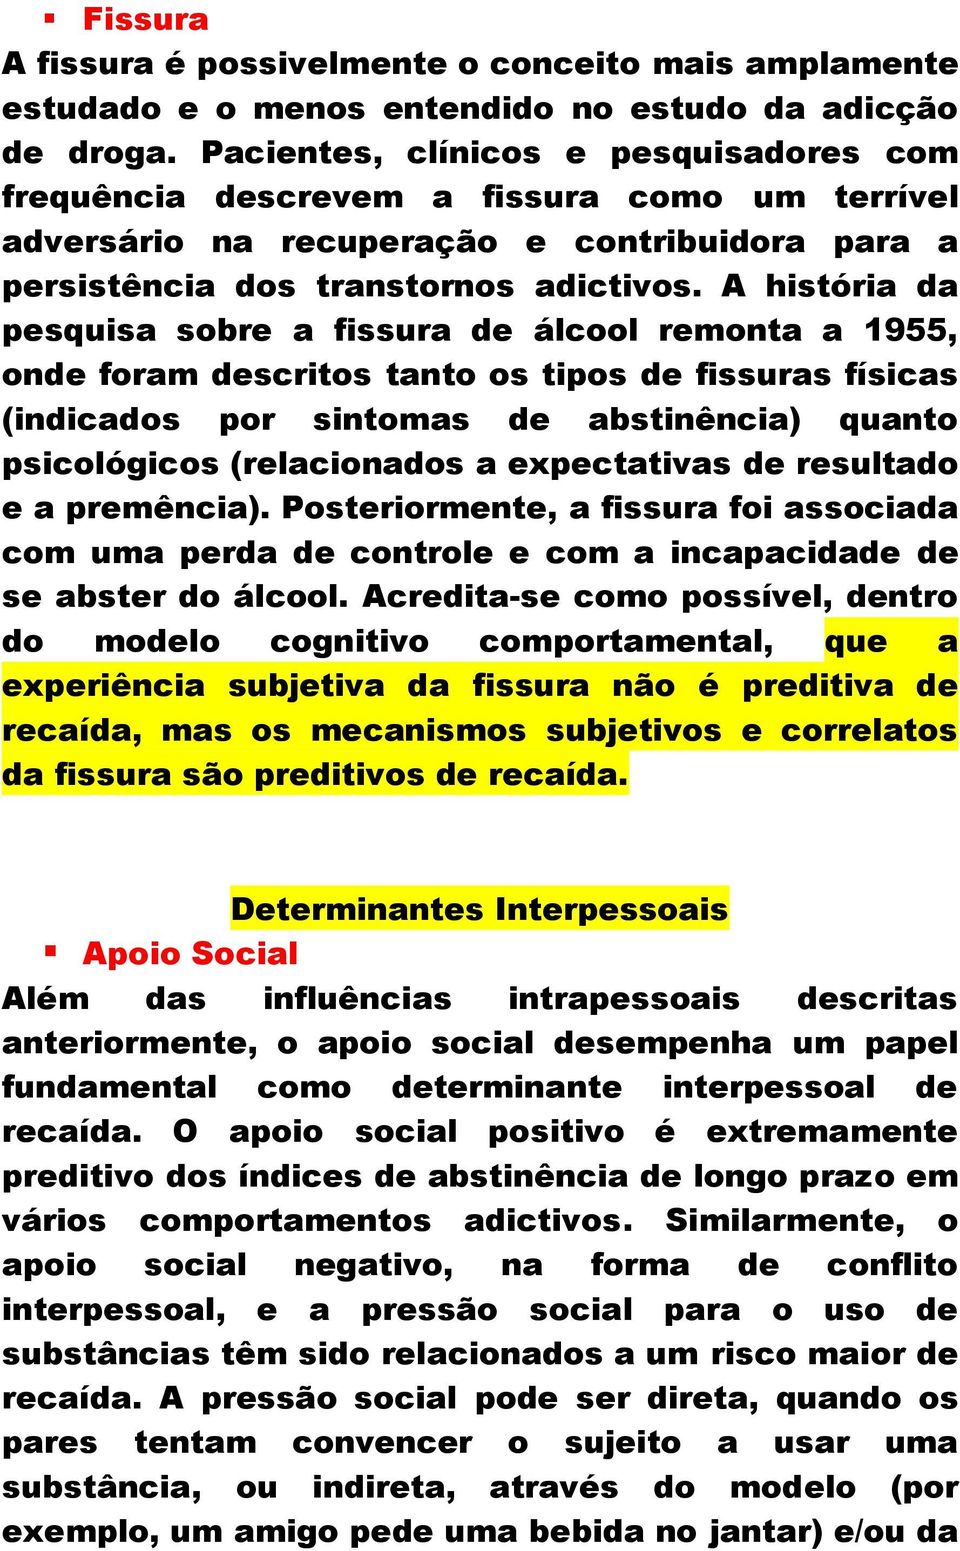 A história da pesquisa sobre a fissura de álcool remonta a 1955, onde foram descritos tanto os tipos de fissuras físicas (indicados por sintomas de abstinência) quanto psicológicos (relacionados a